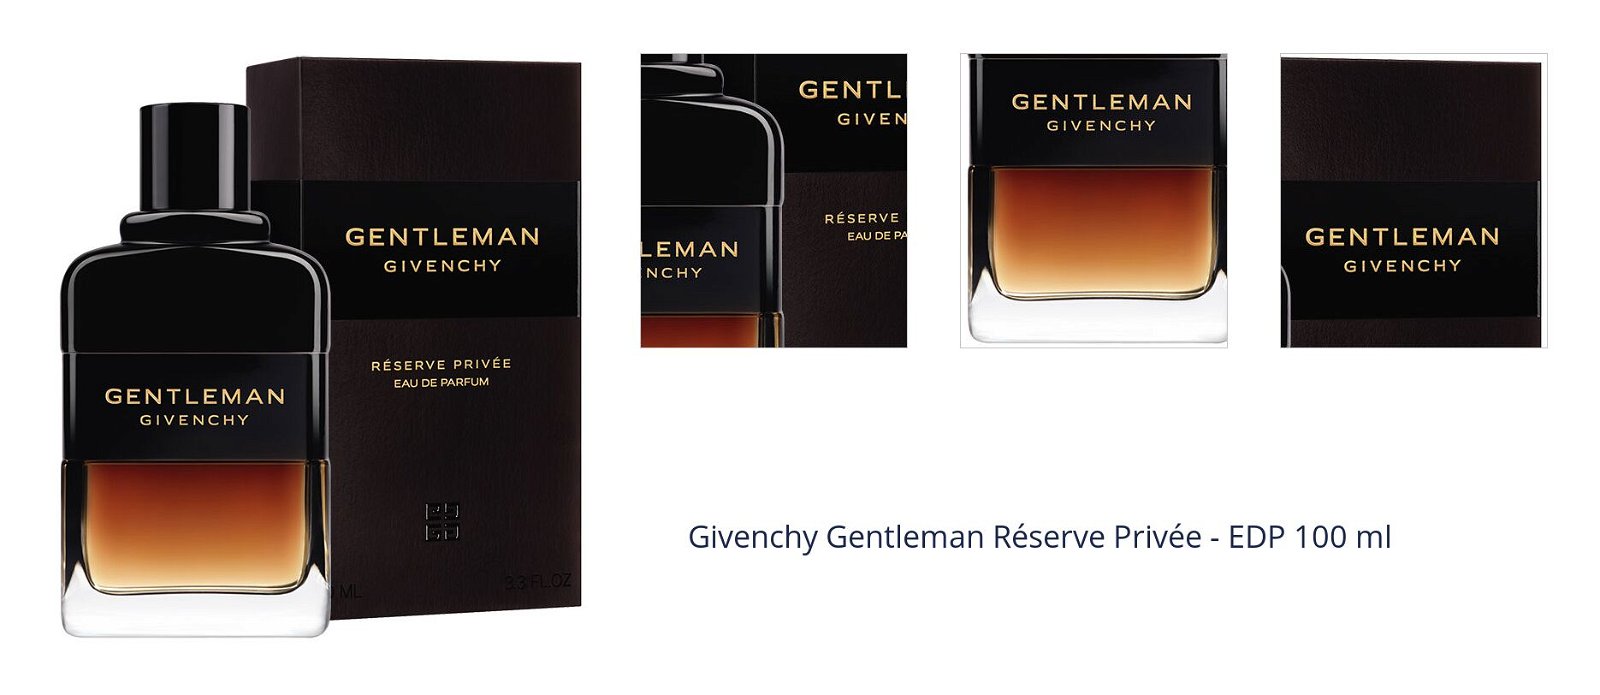 Givenchy Gentleman Réserve Privée - EDP 100 ml 1